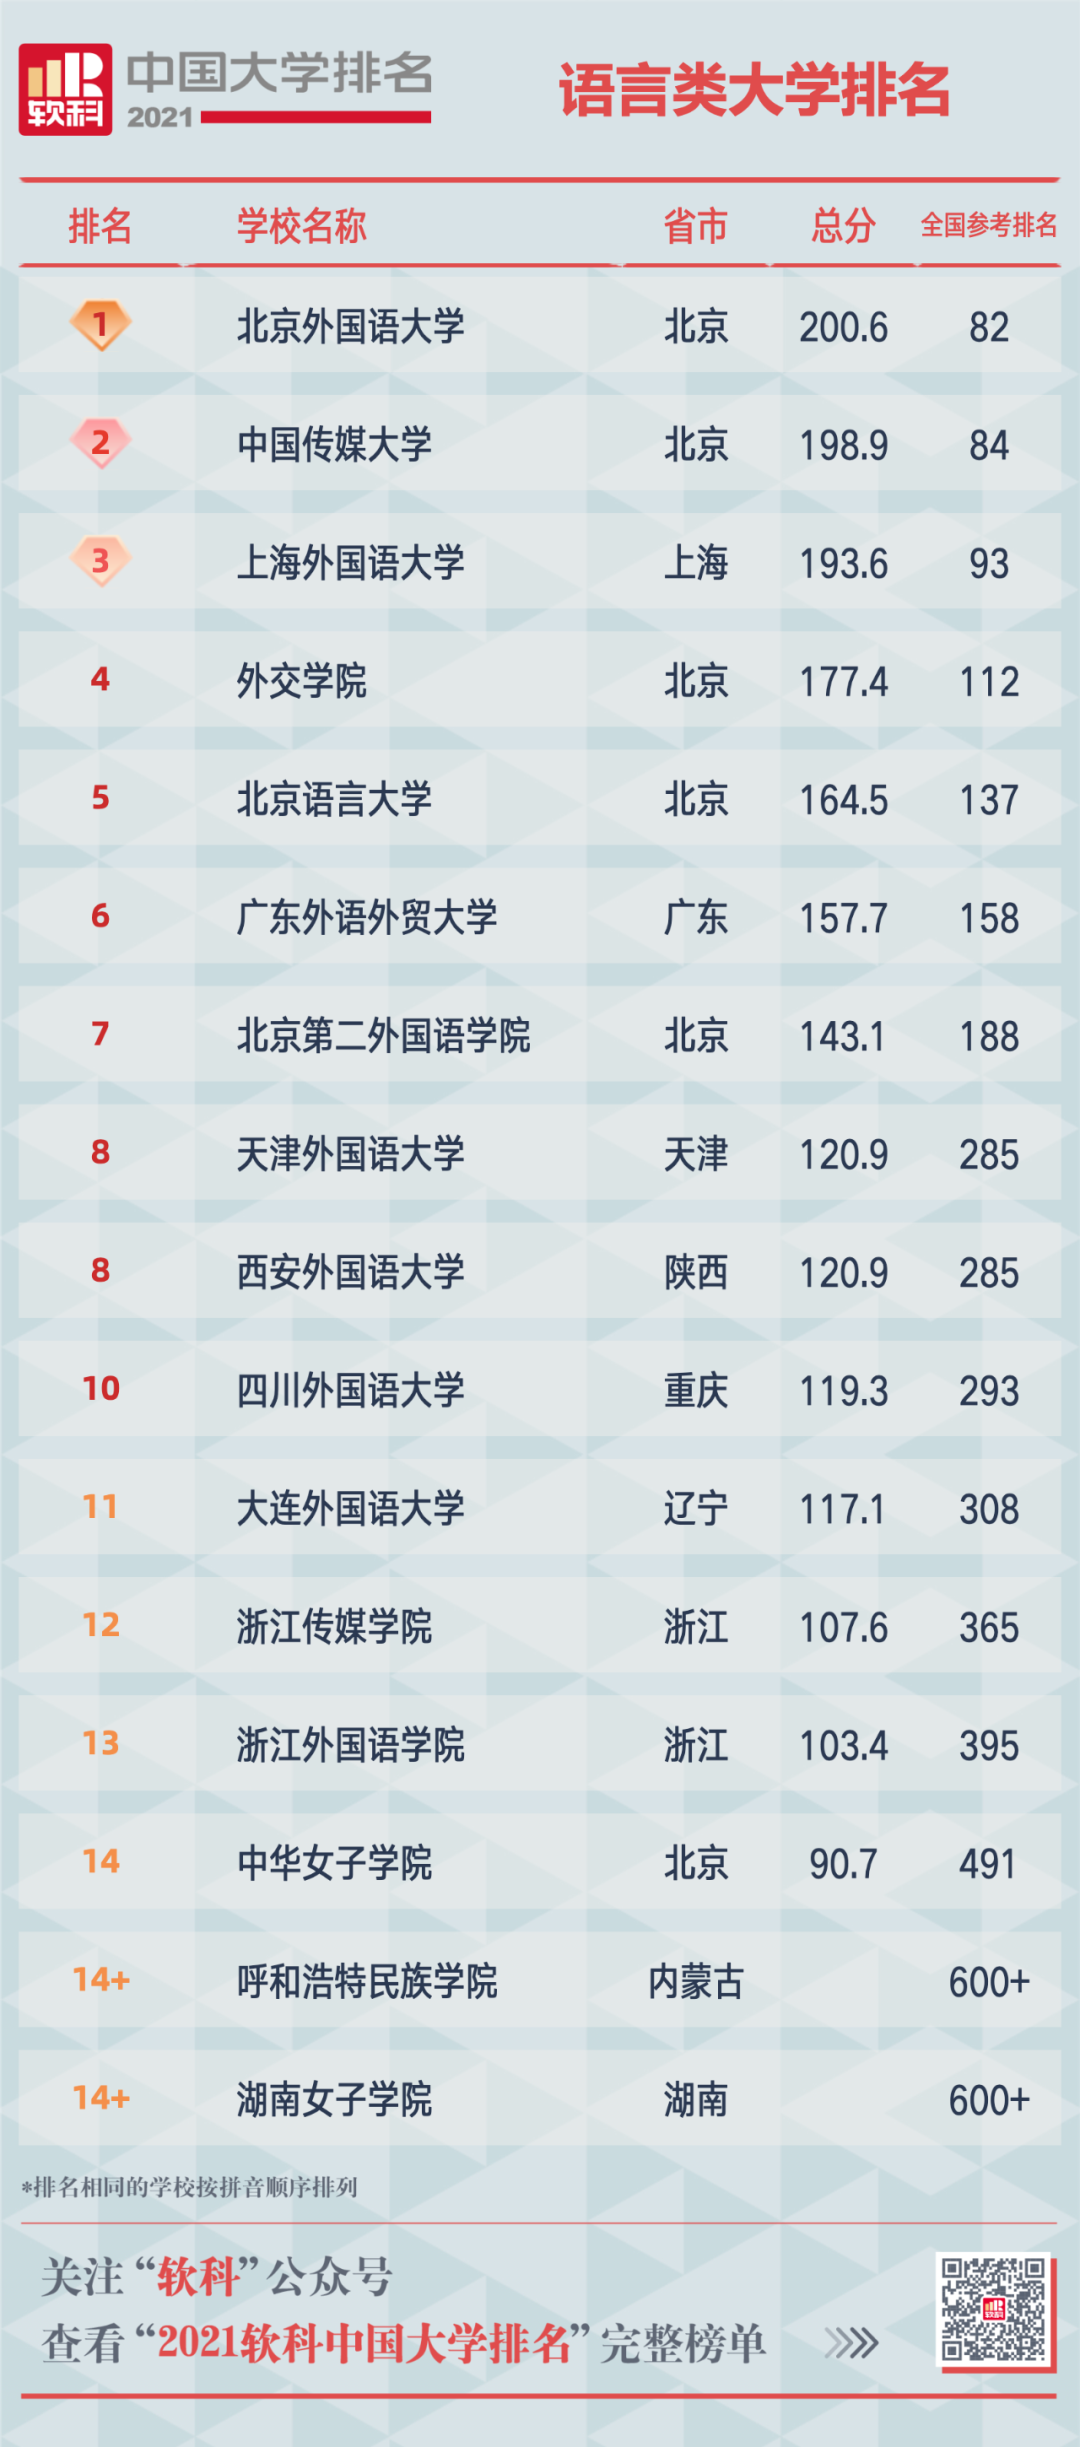 2021软科中国大学排名重磅发布 广东中山大学位列第12位  排名 CWUR排名 第15张